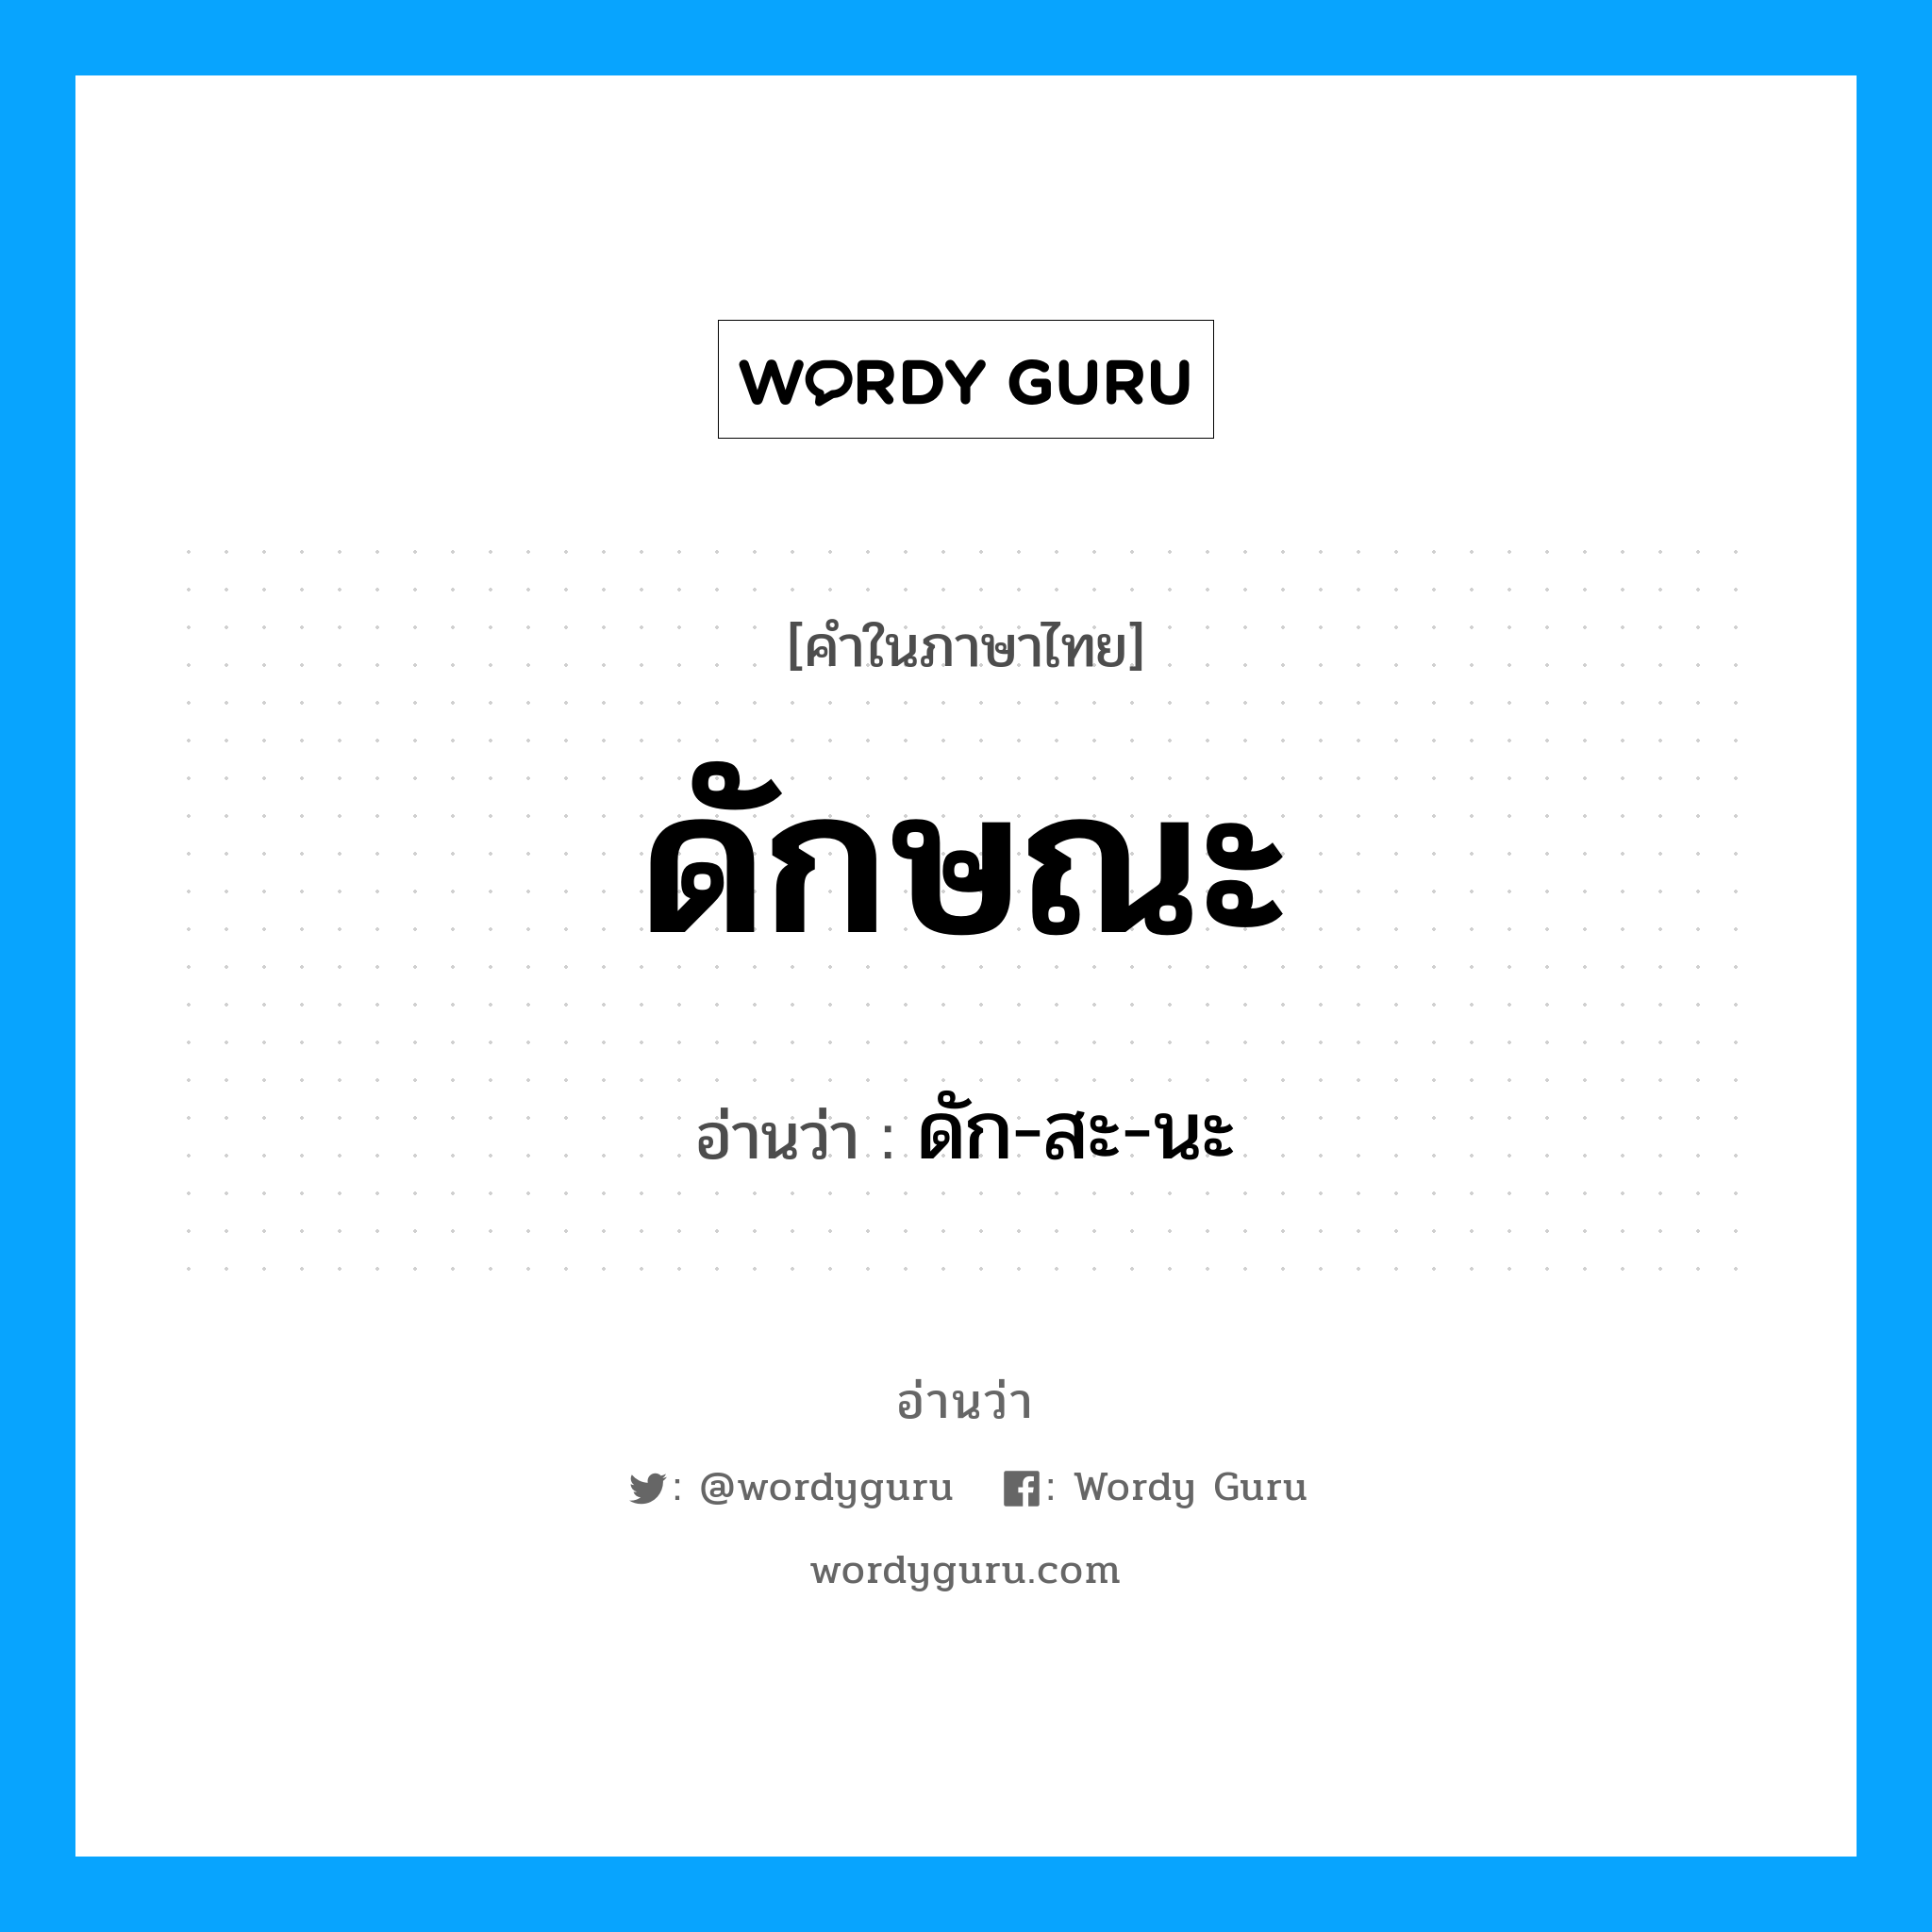 ดัก-สะ-นะ เป็นคำอ่านของคำไหน?, คำในภาษาไทย ดัก-สะ-นะ อ่านว่า ดักษณะ